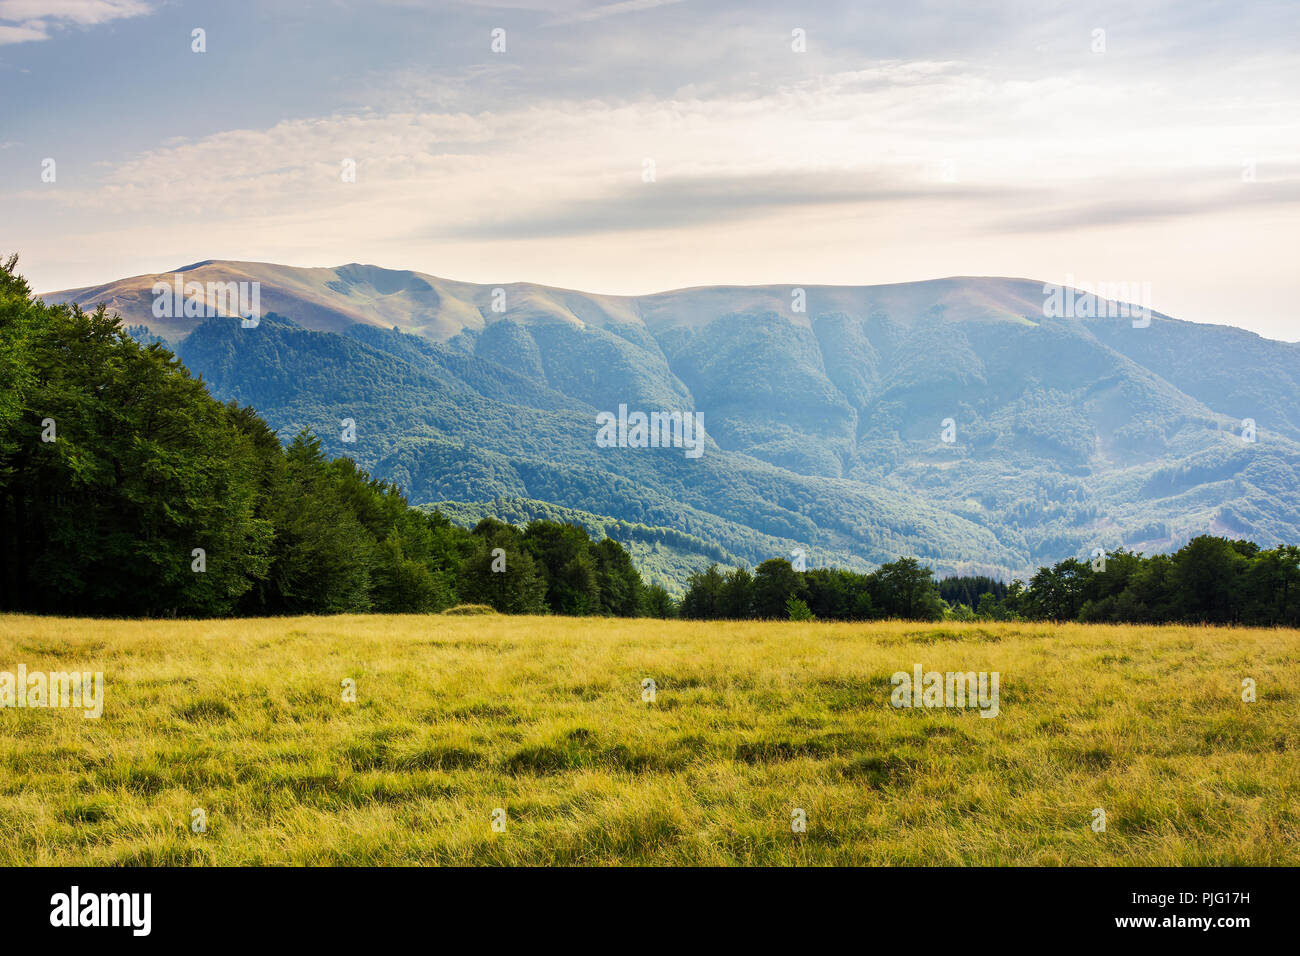 Alpine grassy glade parmi la forêt de hêtres en montagnes. de beaux paysages au crépuscule. merveilleuse nature background Banque D'Images